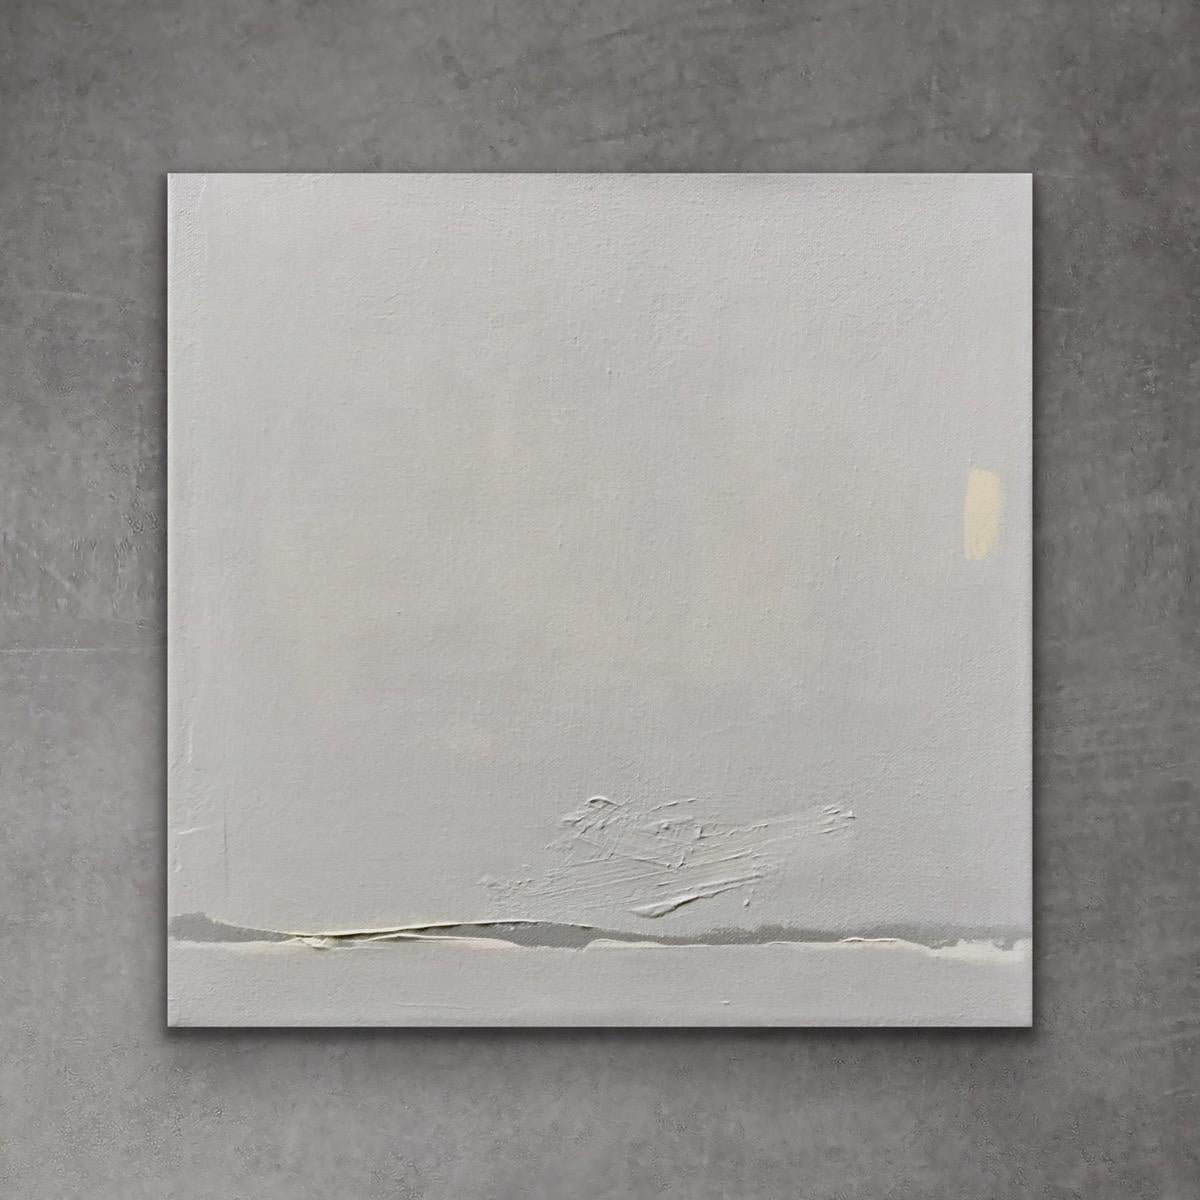 Frieden und Gelassenheit - (12x12, Grau, Beige, minimalistisches abstraktes Landschaftsgemälde)